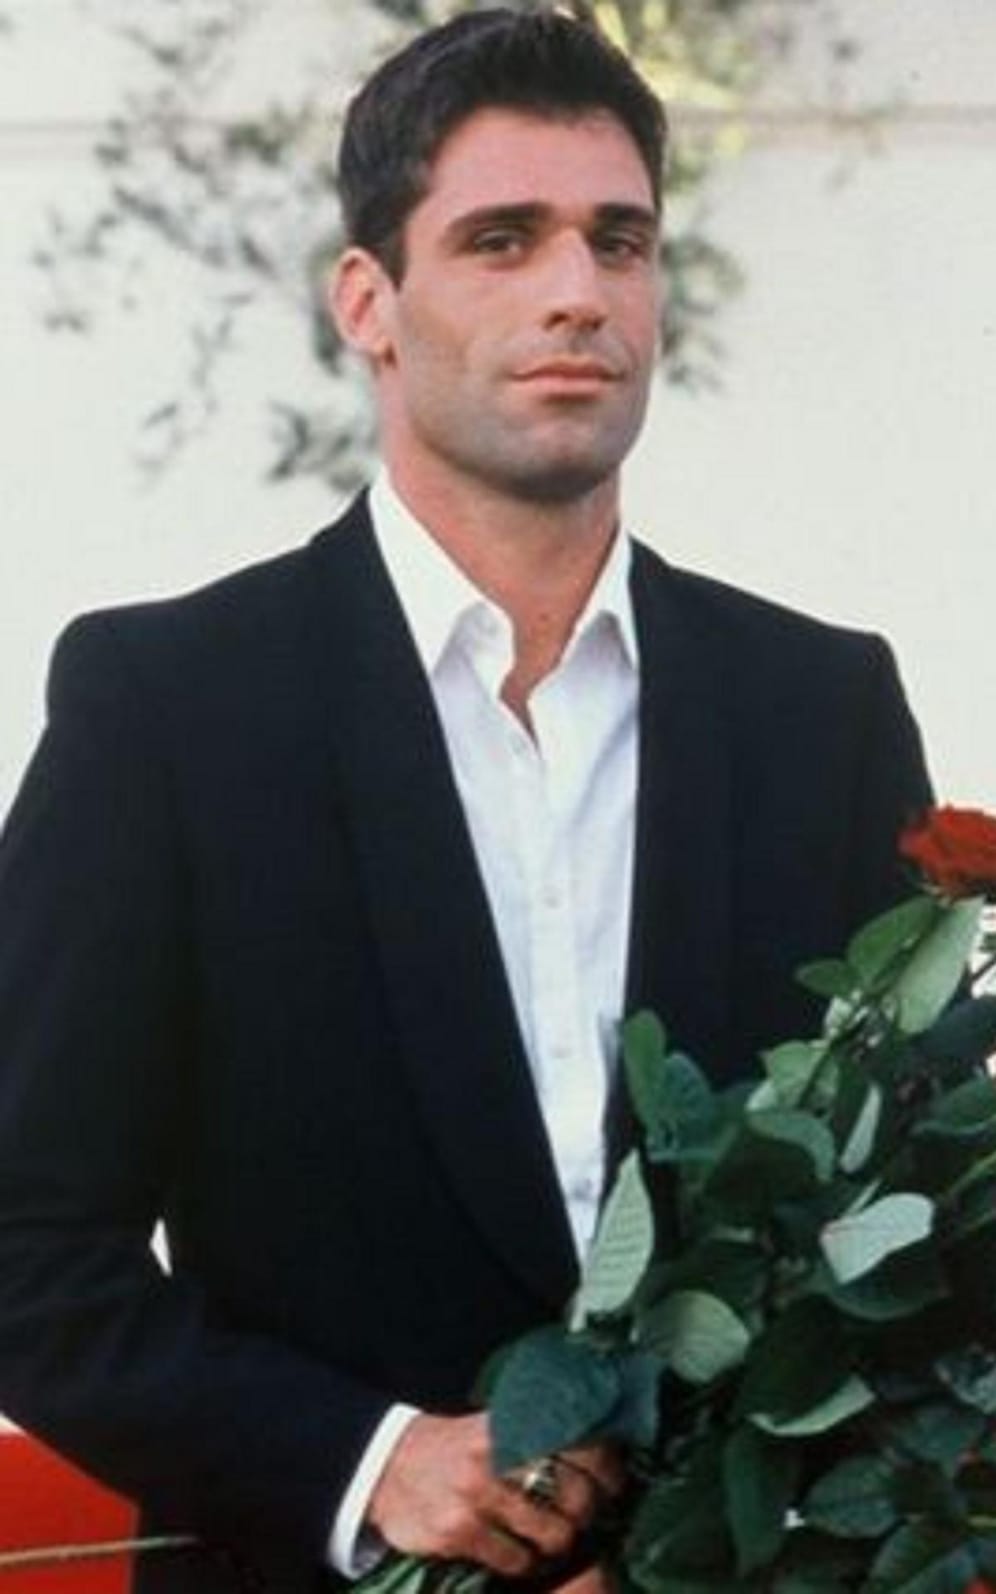 Marcel Maderitsch war der erste Bachelor. Er verteilte 2003 die Rosen.